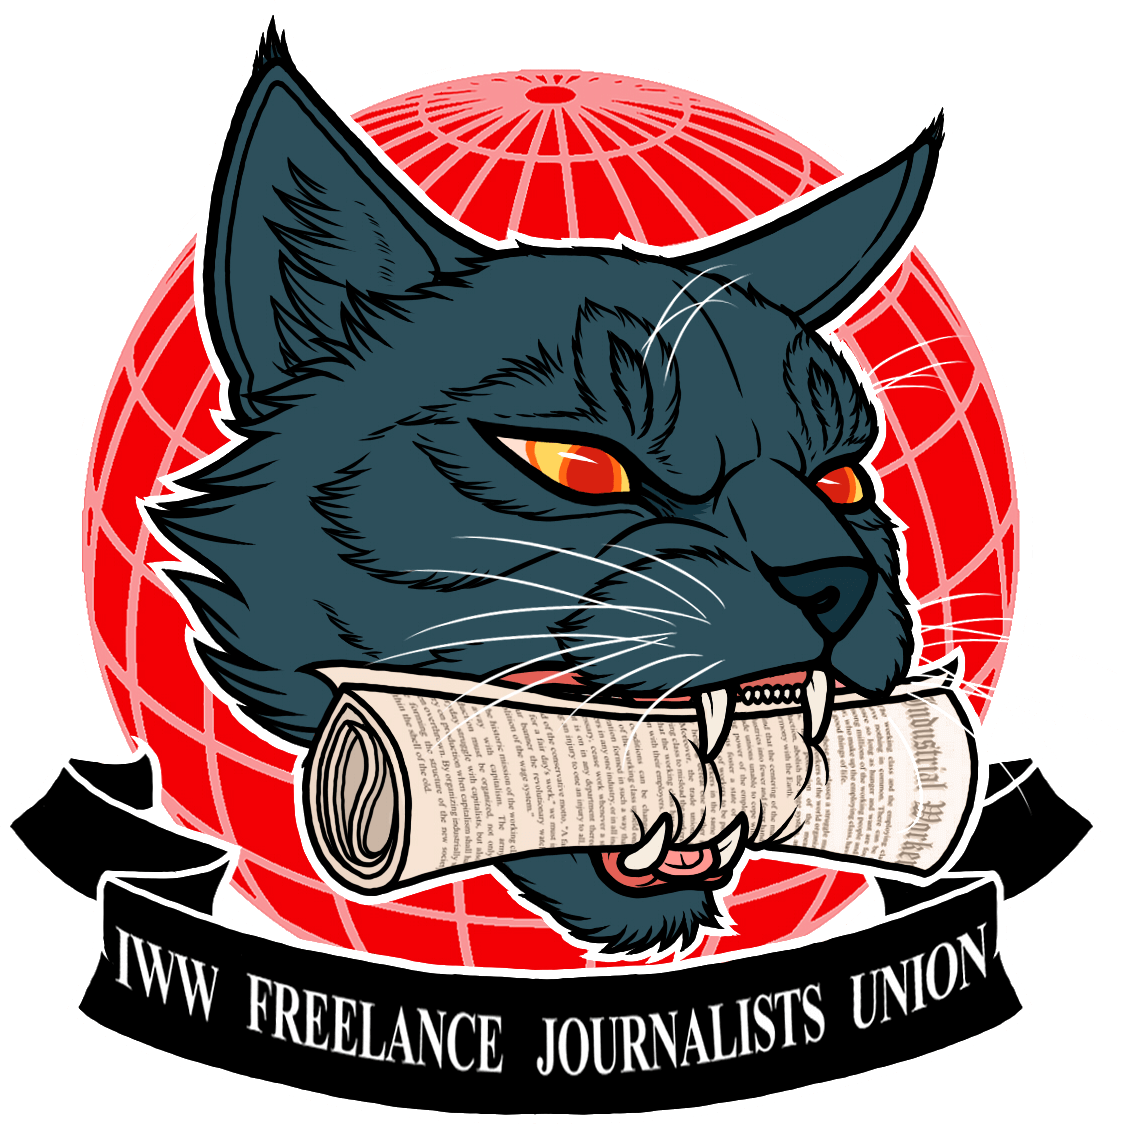 El logotipo del Sindicato de Periodistas Independientes (SPI) de los Trabajadores Industriales del Mundo, que es un gato negro portando en su boca un periódico.